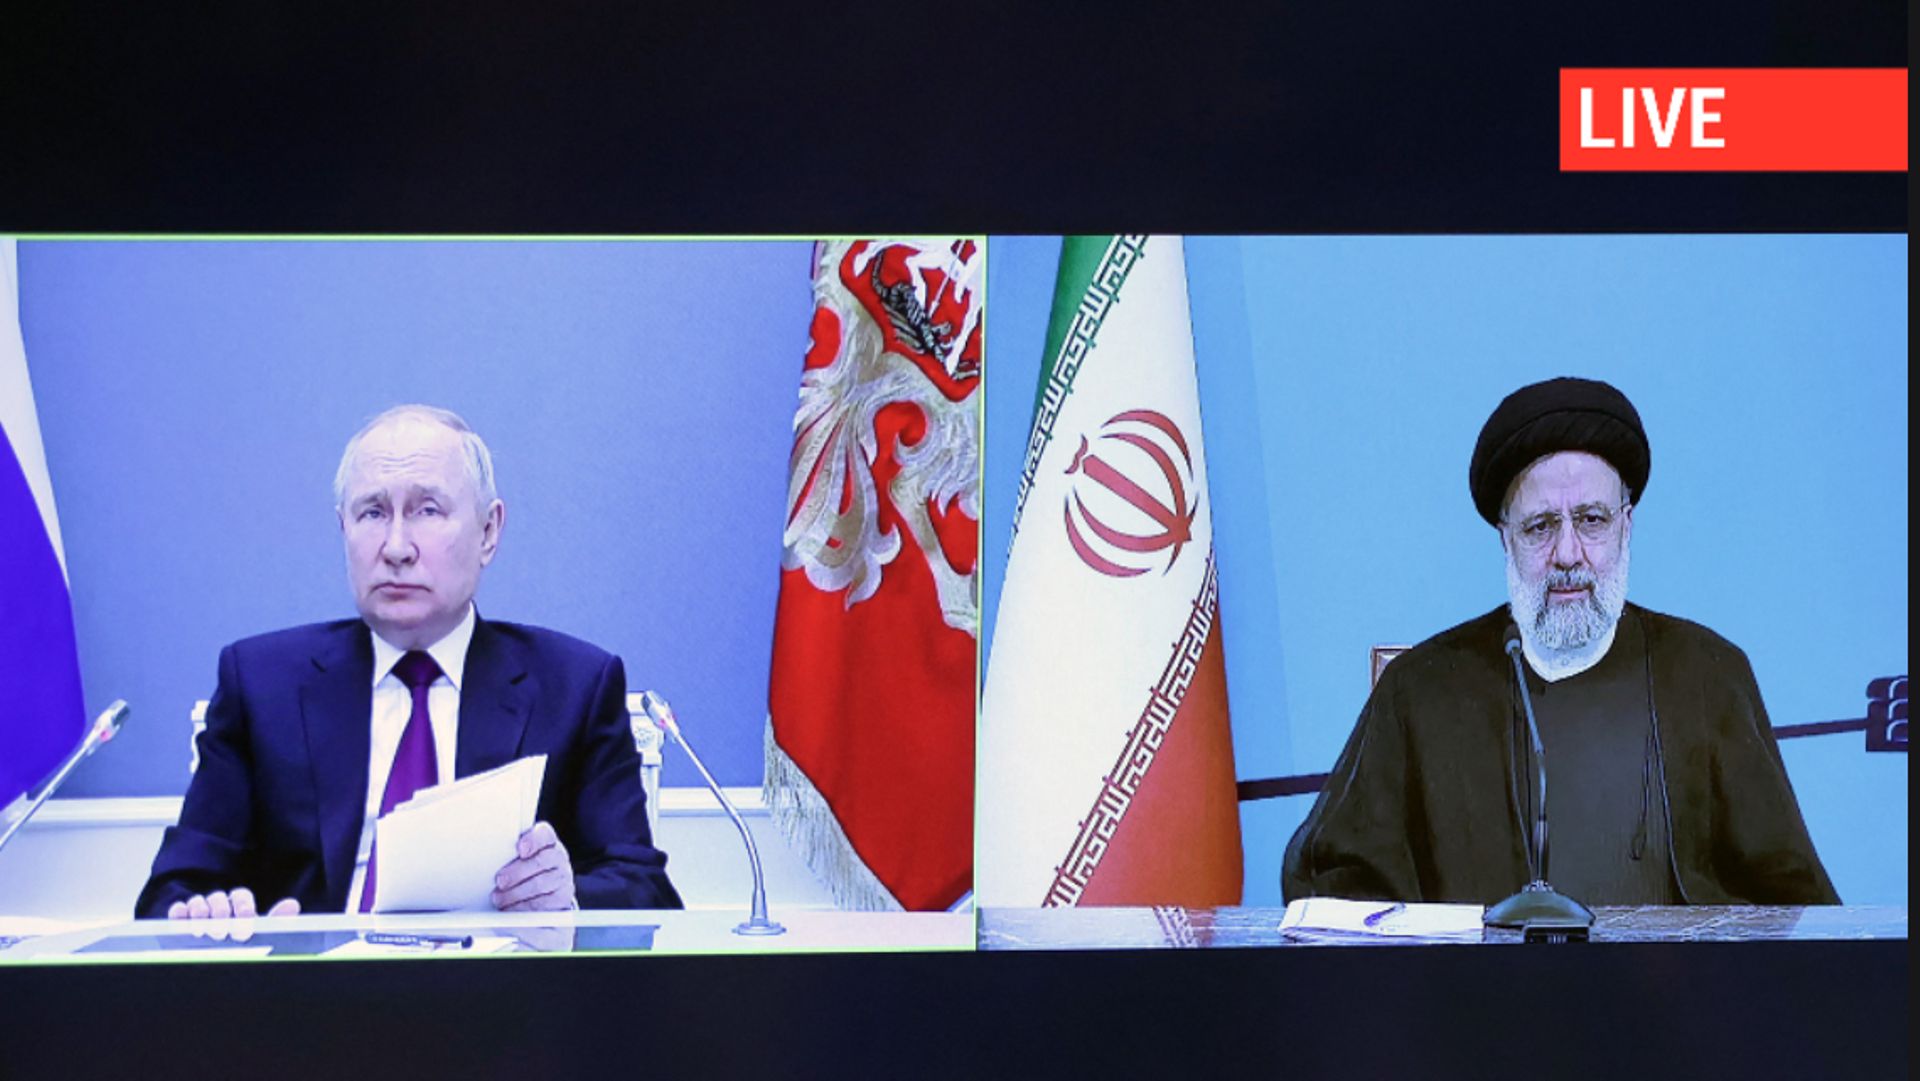 Le président iranien Ebrahim Raisi et le président russe Vladimir Poutine assistent par vidéoconférence à la signature d'un accord pour la construction de la dernière partie du corridor international de transport nord-sud (INSTC) qui relie la Russie au Go